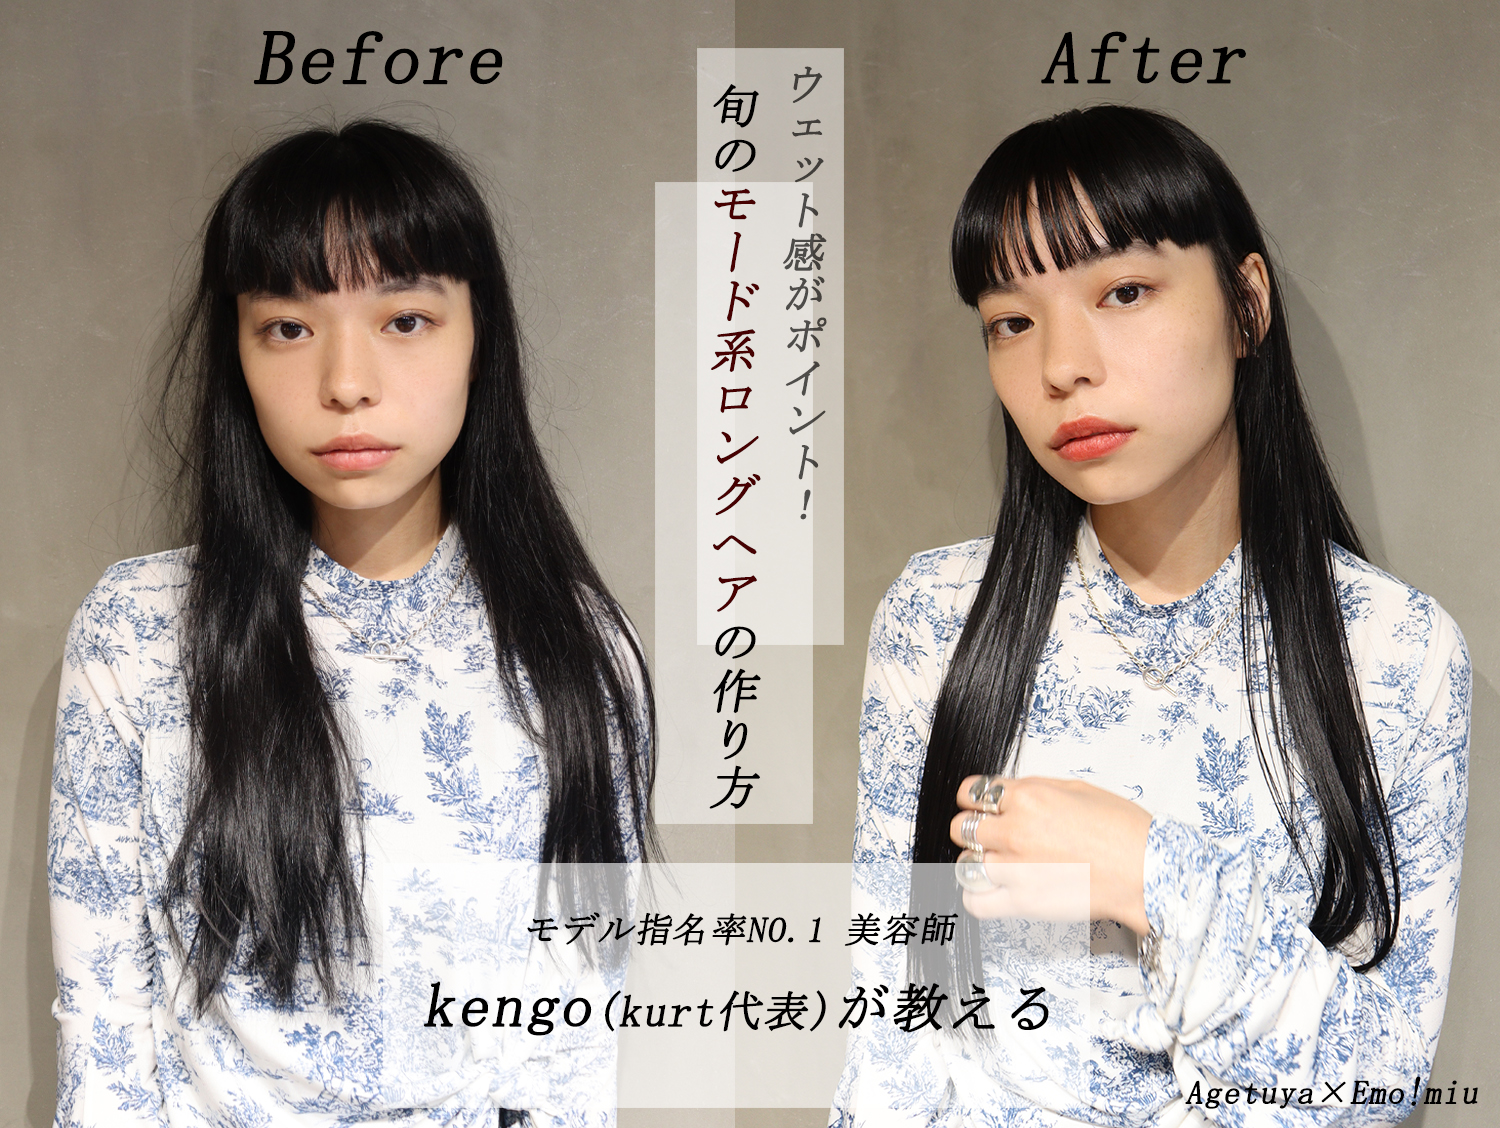 イケメン美容師kengoが教える 1つのヘアアイロンで作る男女のカップルヘアアレンジ シェアアイロン Emo Miu Agetuya Emo Miu エモミュー